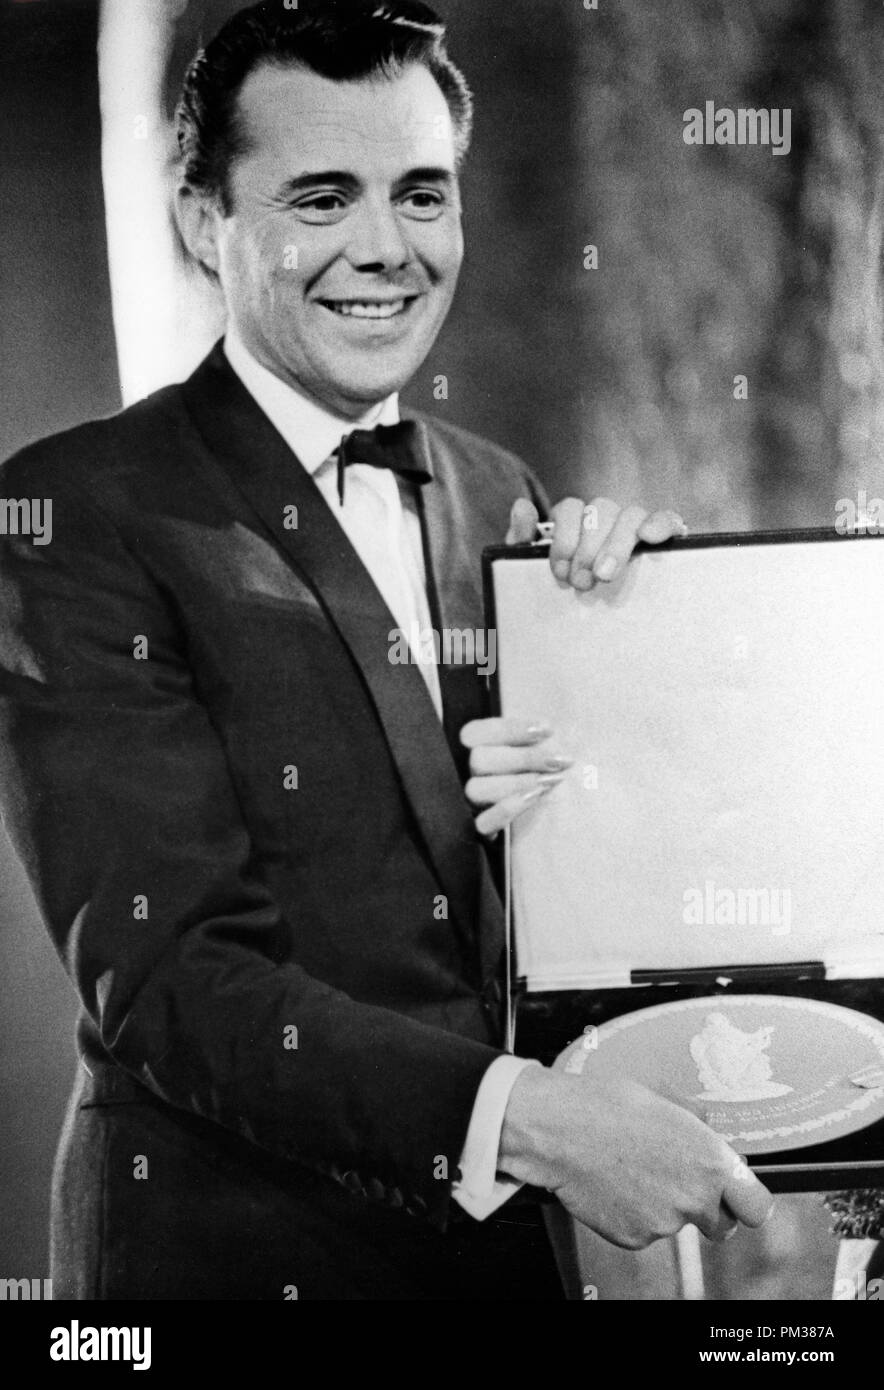 Dirk Bogarde raccoglie i suoi British Film Academy Award per il miglior attore britannico, marzo 1966. Riferimento al file # 1166 002THA © CCR /Hollywood Archivio - Tutti i diritti riservati Foto Stock